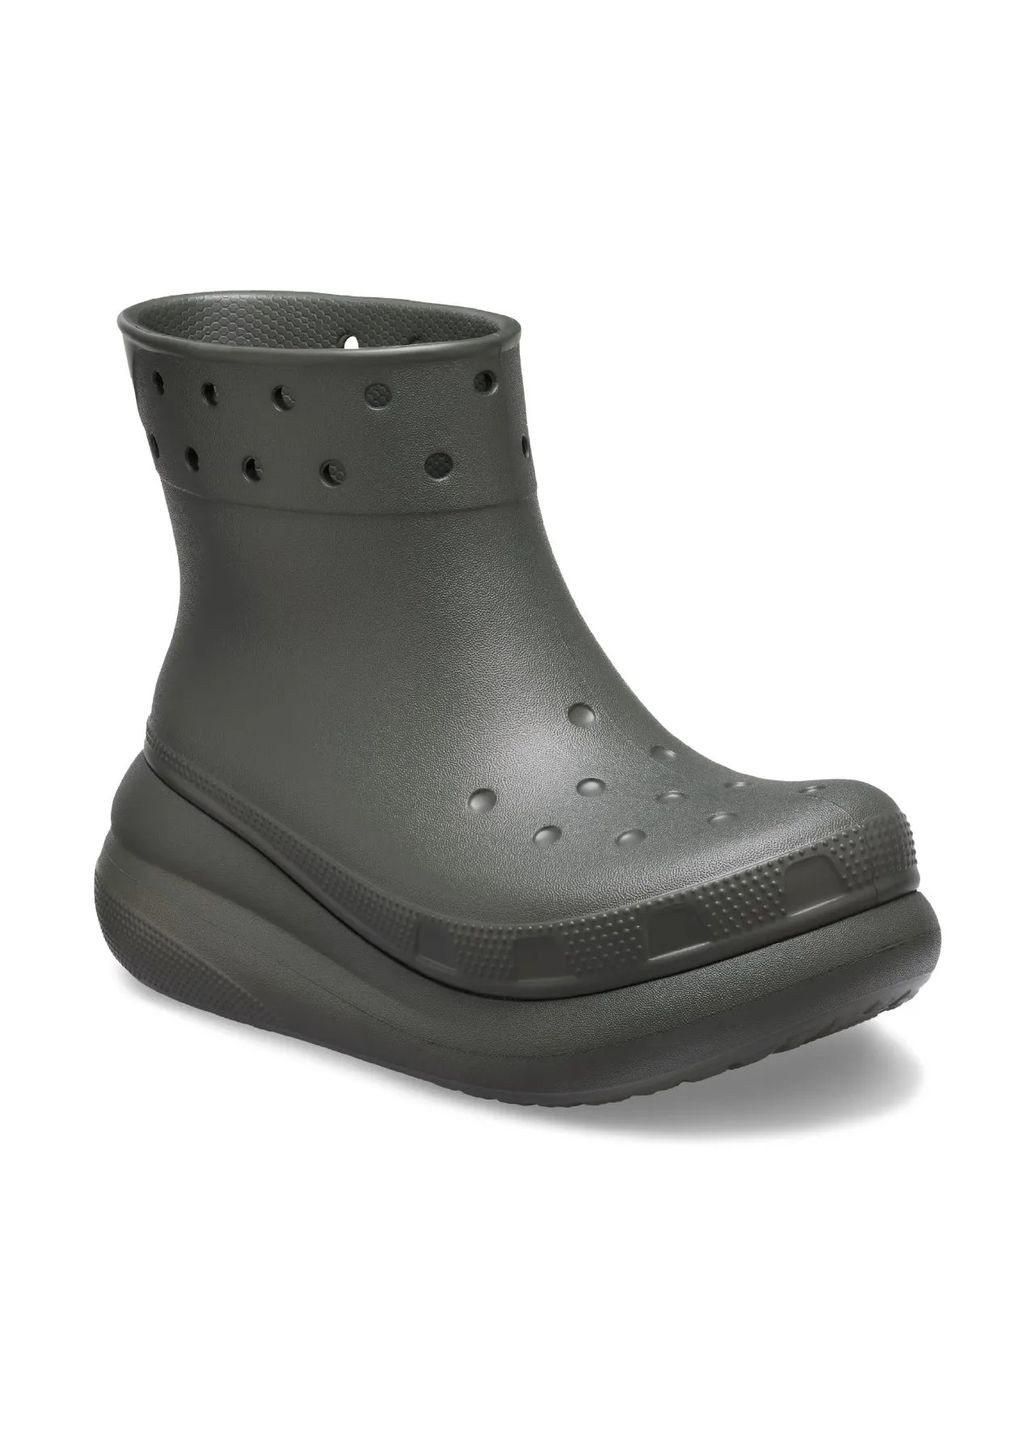 Зеленые резиновые сапоги crush boot dusty olive /m5w7/24 см 207946 Crocs